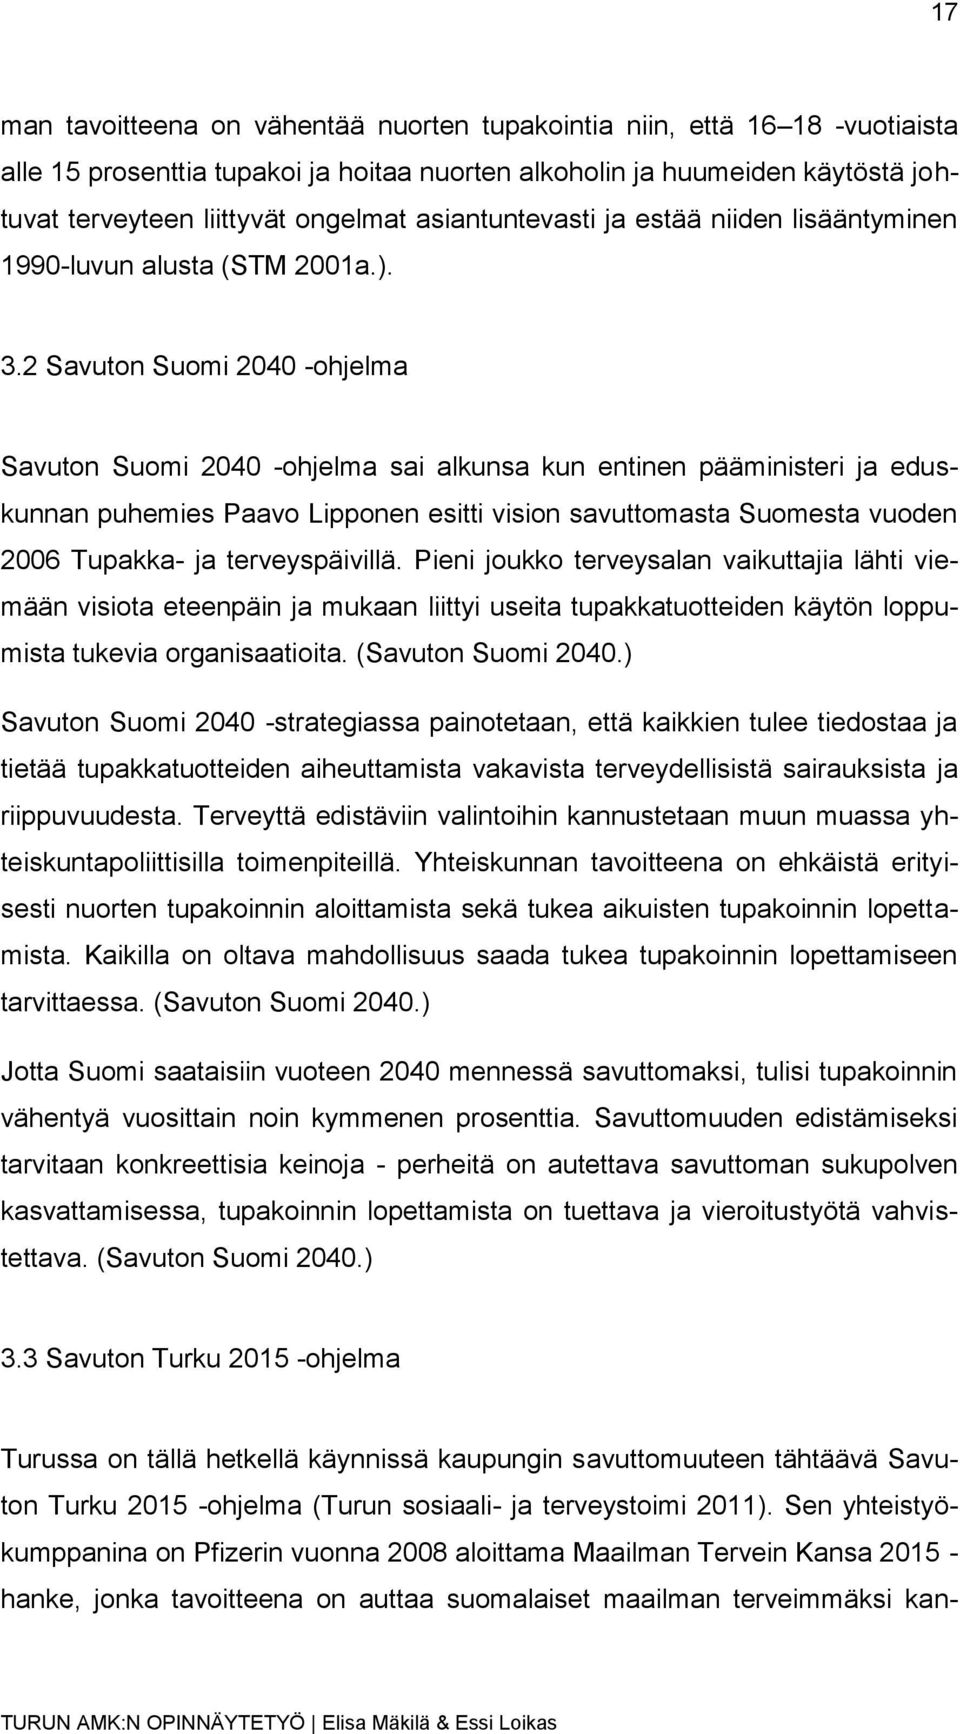 2 Savuton Suomi 2040 -ohjelma Savuton Suomi 2040 -ohjelma sai alkunsa kun entinen pääministeri ja eduskunnan puhemies Paavo Lipponen esitti vision savuttomasta Suomesta vuoden 2006 Tupakka- ja